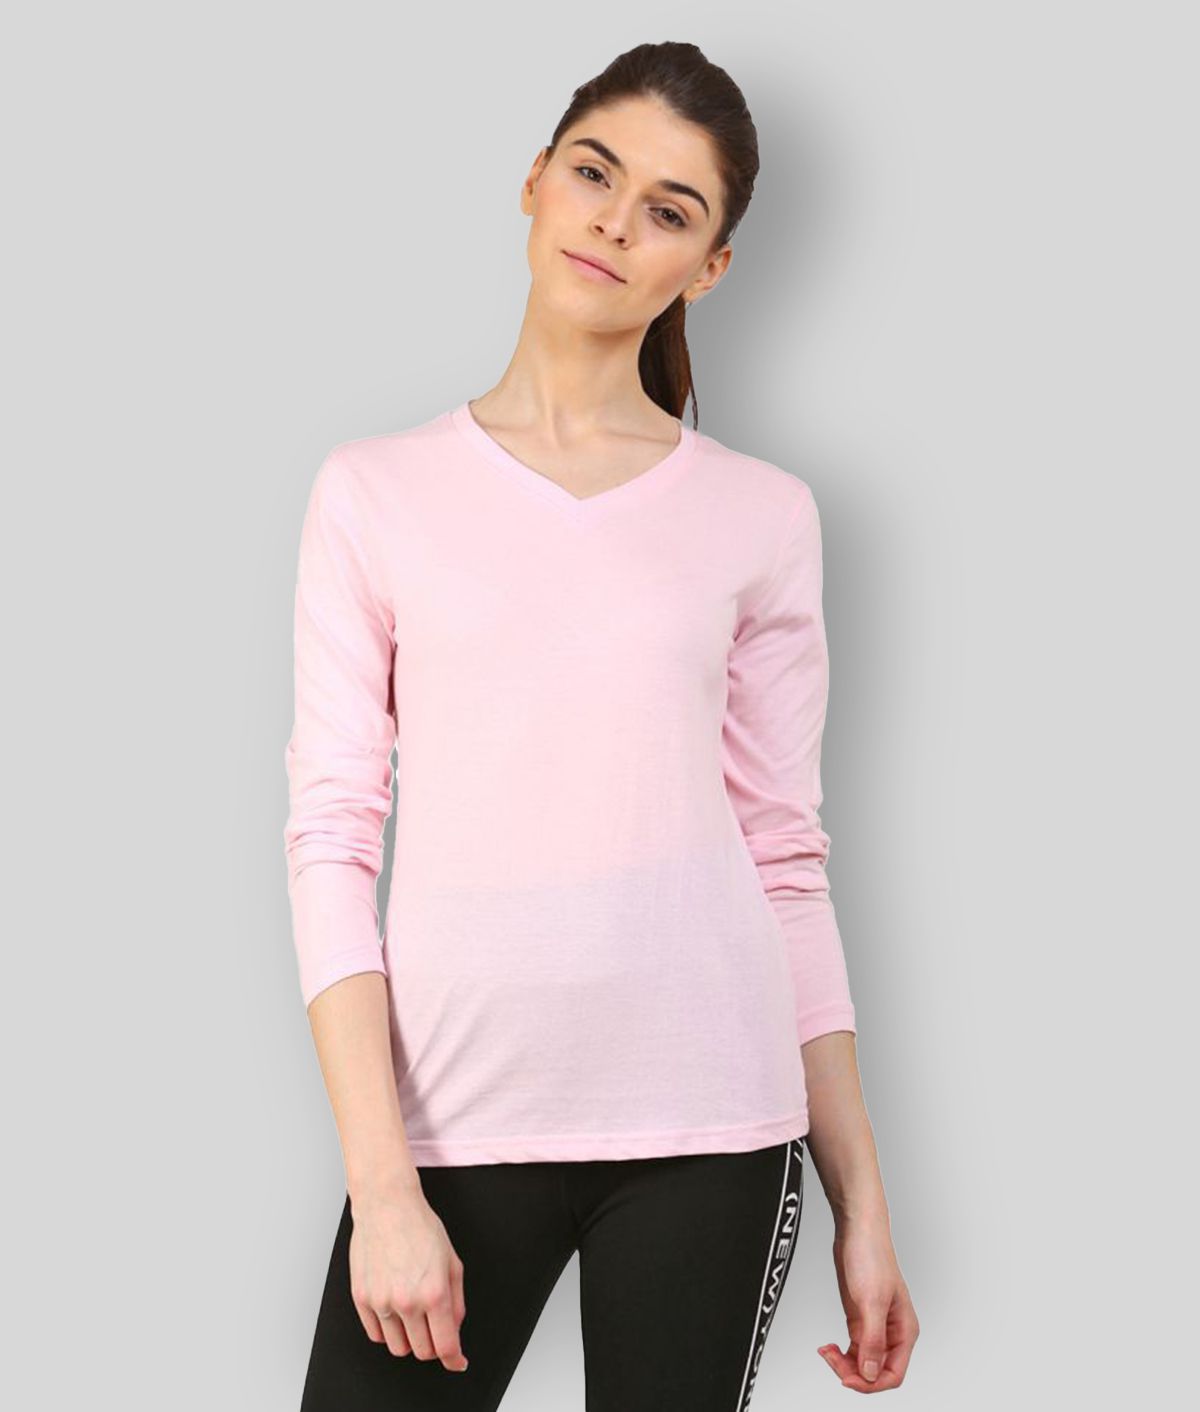     			Ap'pulse - Pink Cotton Regular Fit Women's T-Shirt ( Pack of 1 )